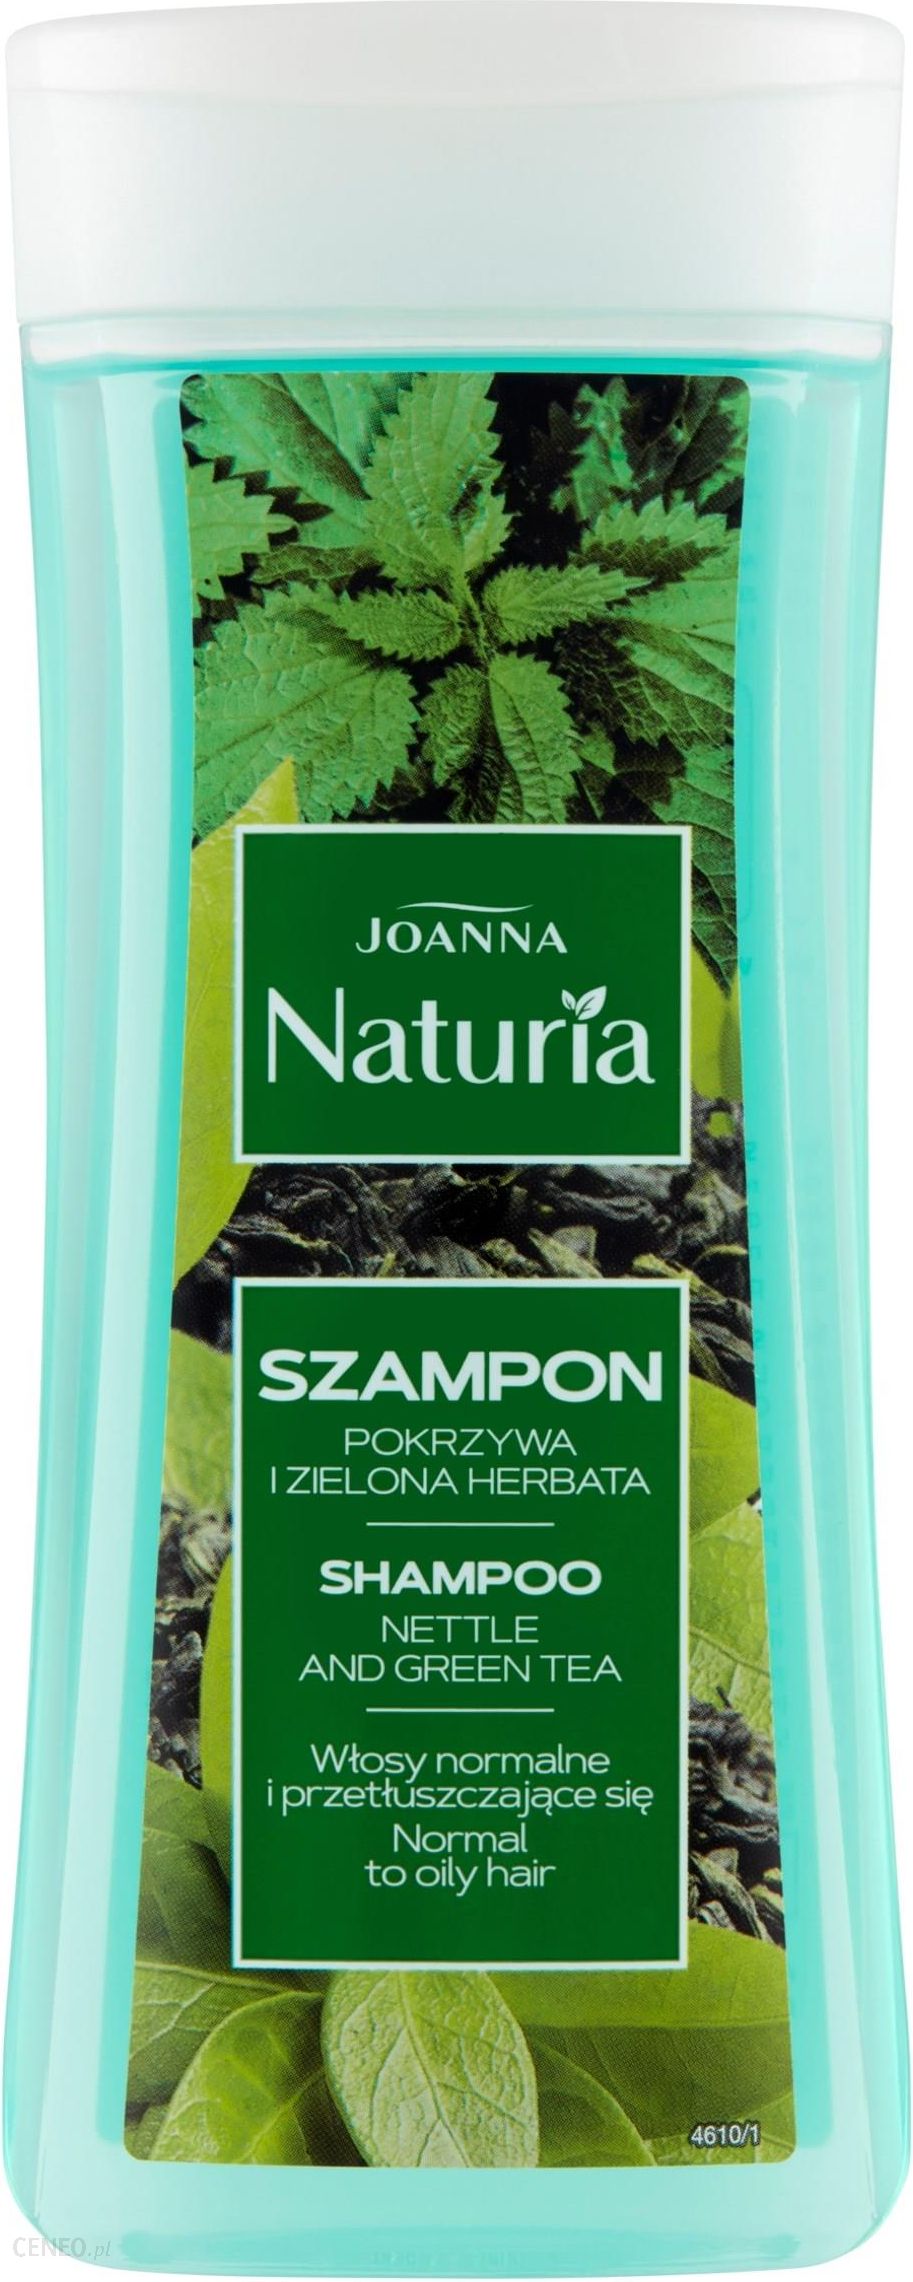 joanna szampon pokrzywa wizaz